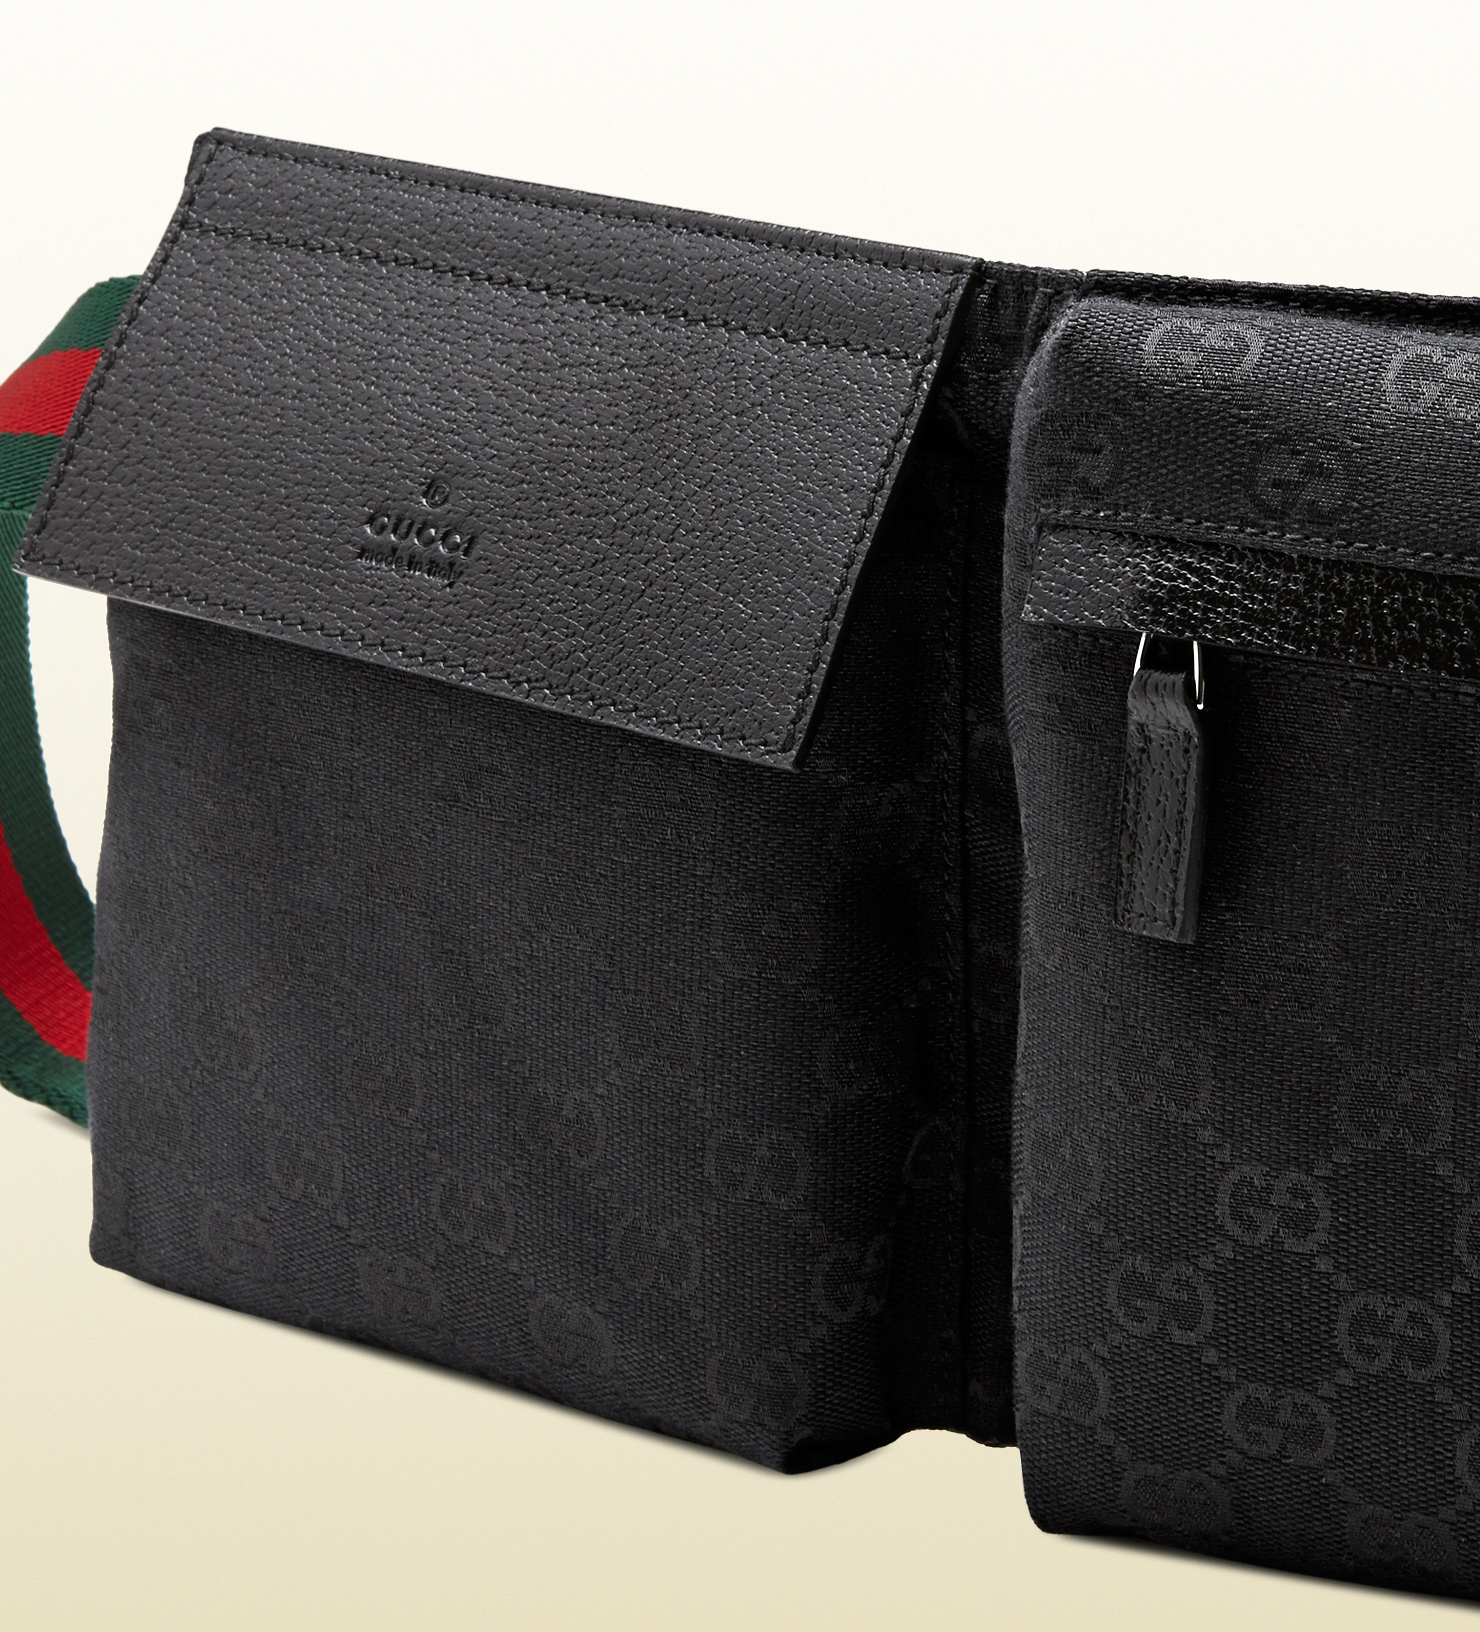 Gucci Original Gg Canvas Belt Bag in 